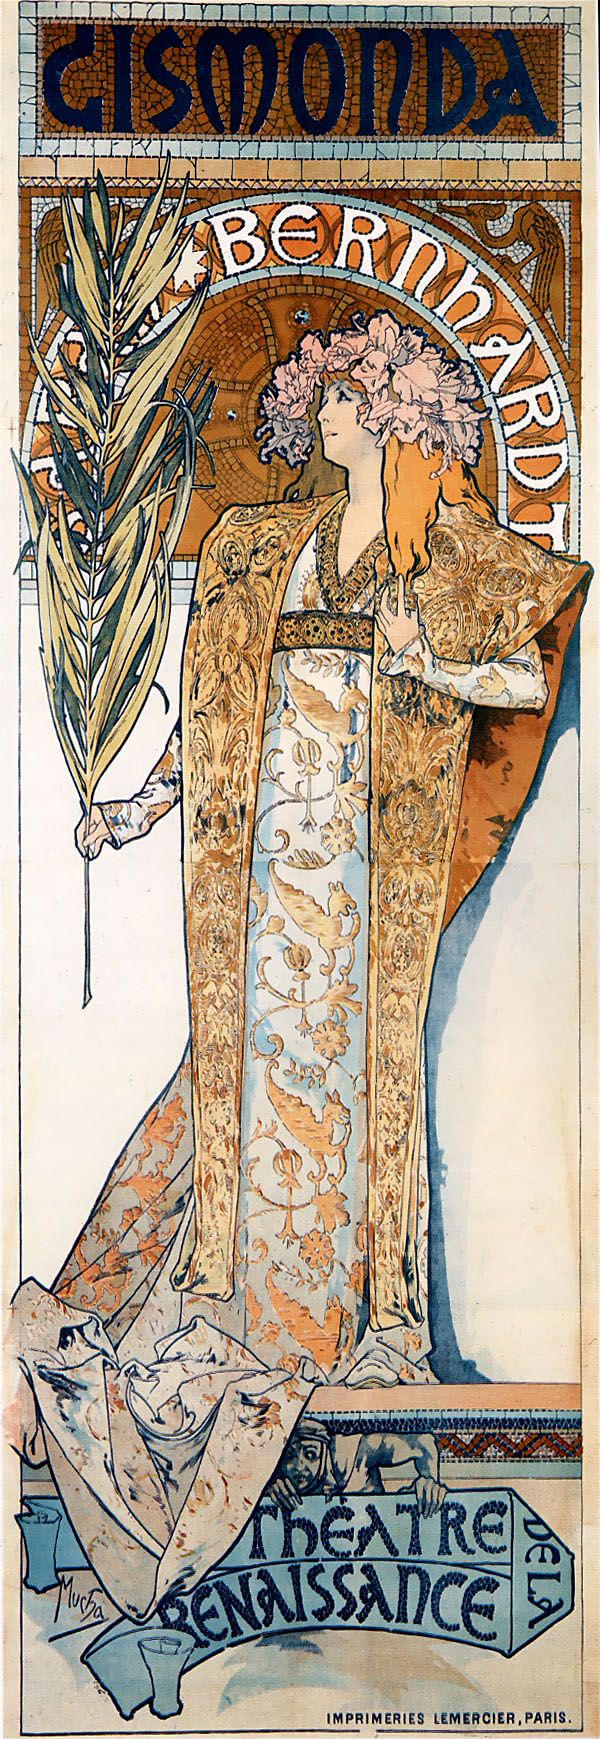 Alfons Mucha 1860 – 1939
Gismonda 1894 
Affiche voor Victorien  Sardou's Gismonda 
gespeeld door Sarah Bernhardt
aan het Théâtre de la Renaissance in Parijs
Lithografie 216 x 74,2 cm 
ARC Grendelkhan  2010 commons.wikimedia